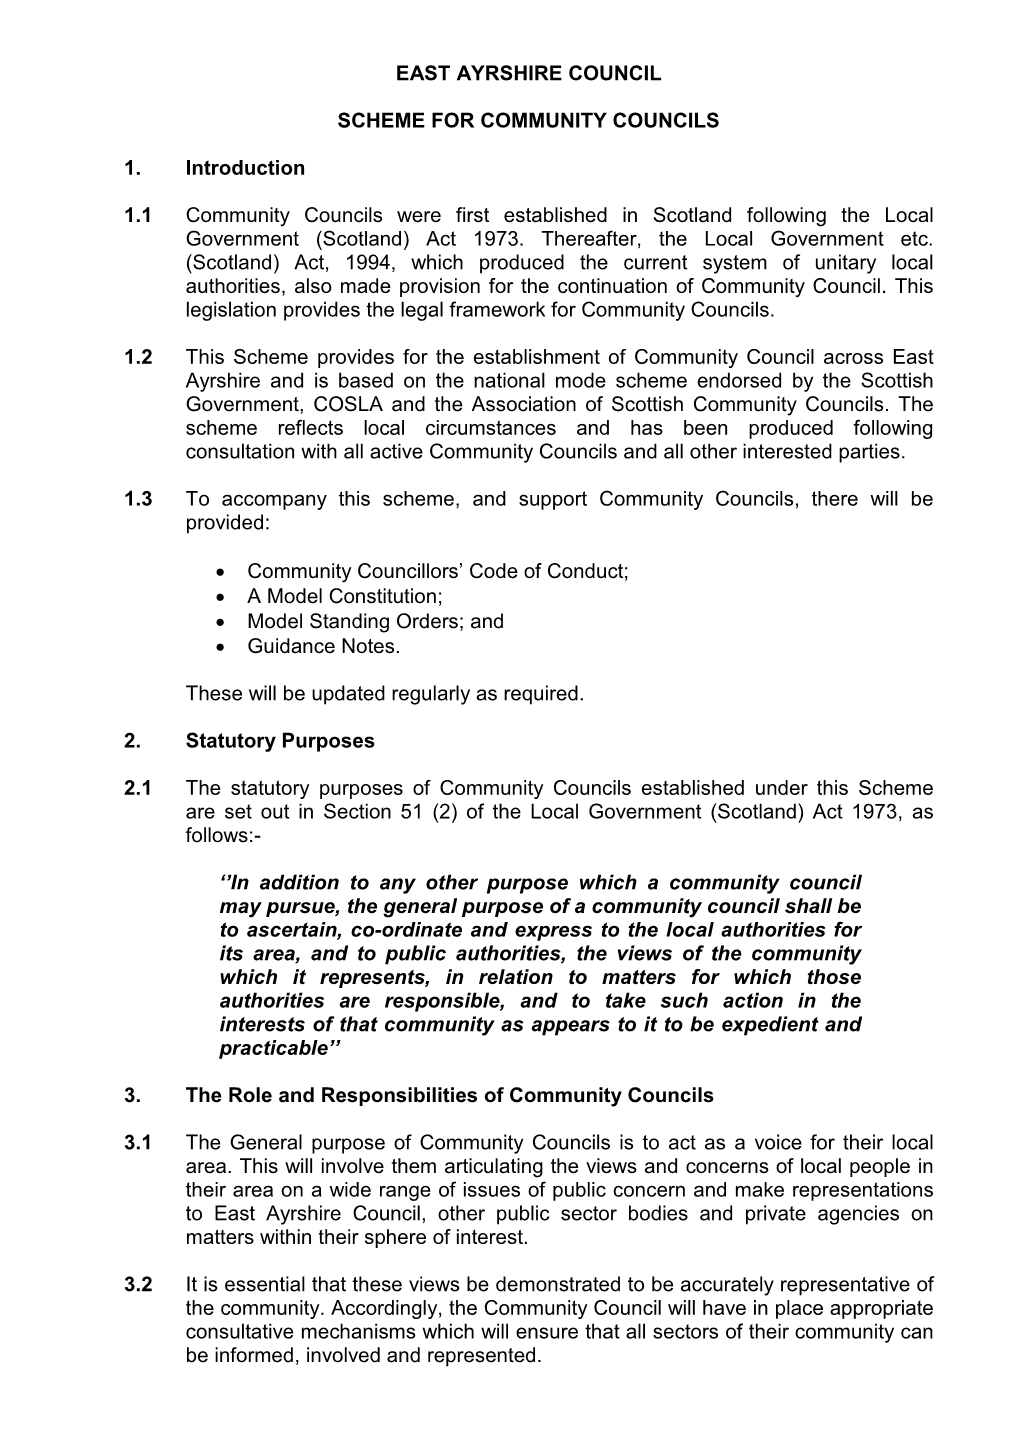 Scheme for Community Councils